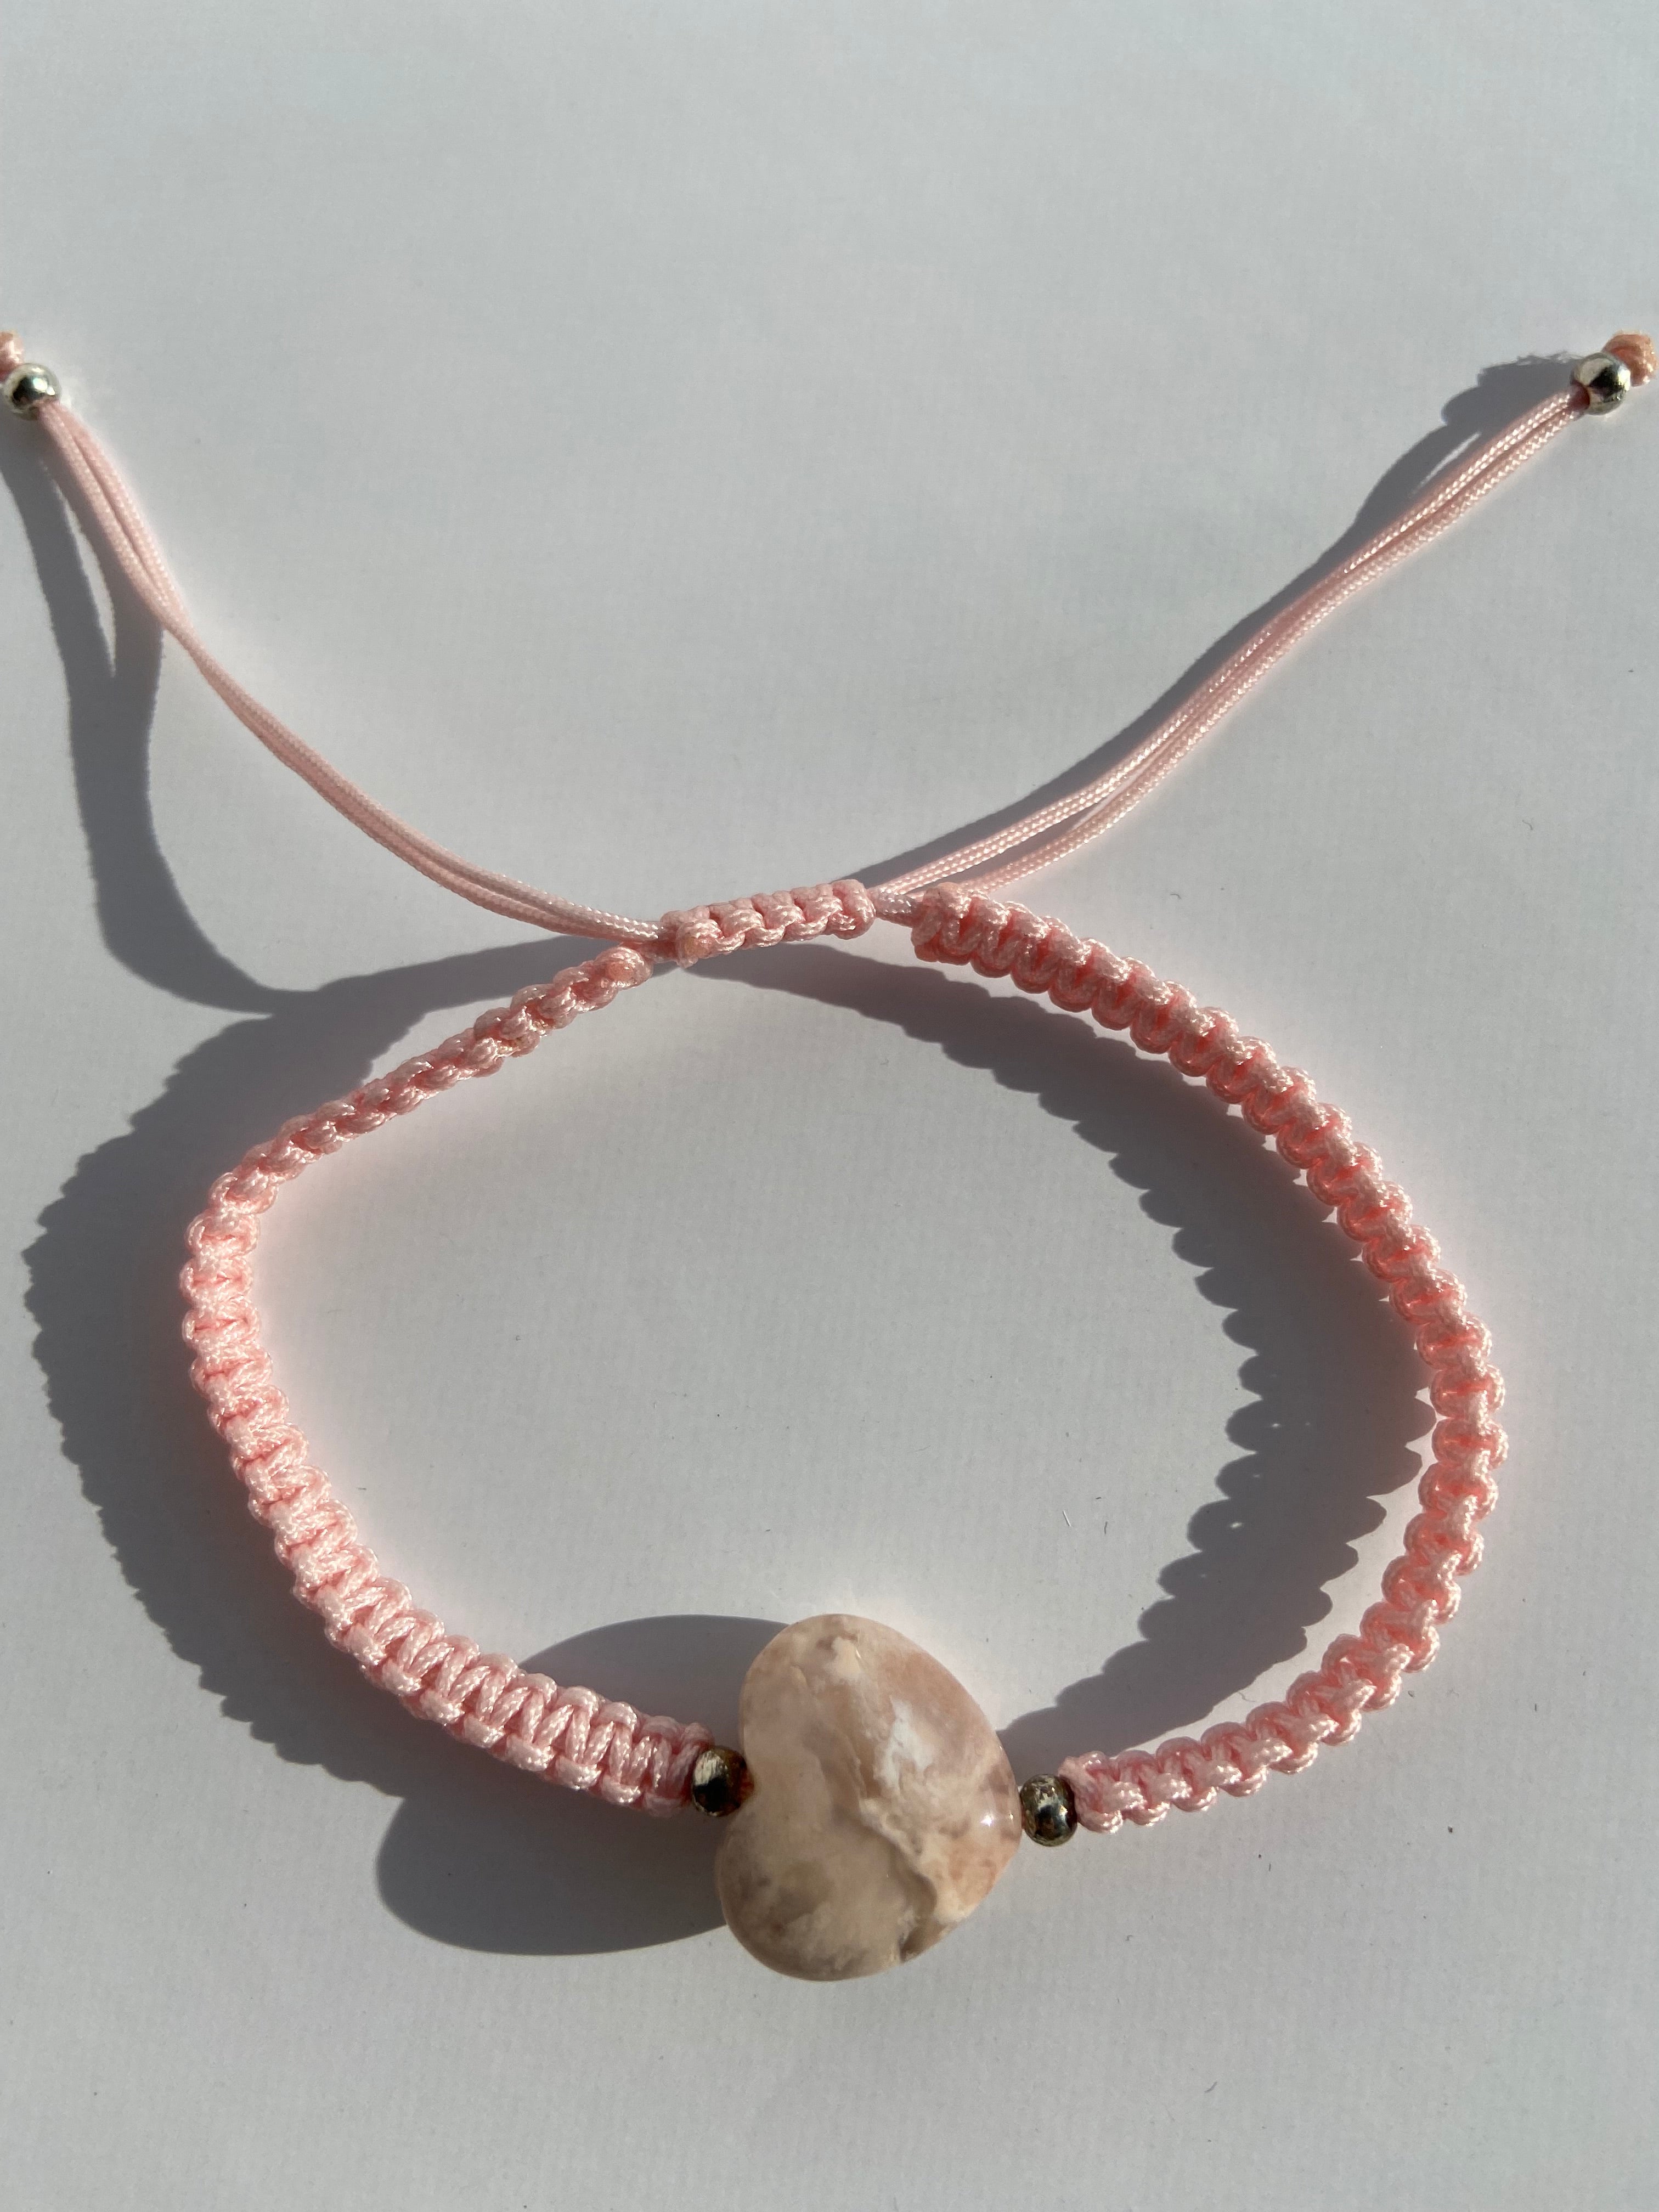 Flower Agate Adjustable String Bracelet